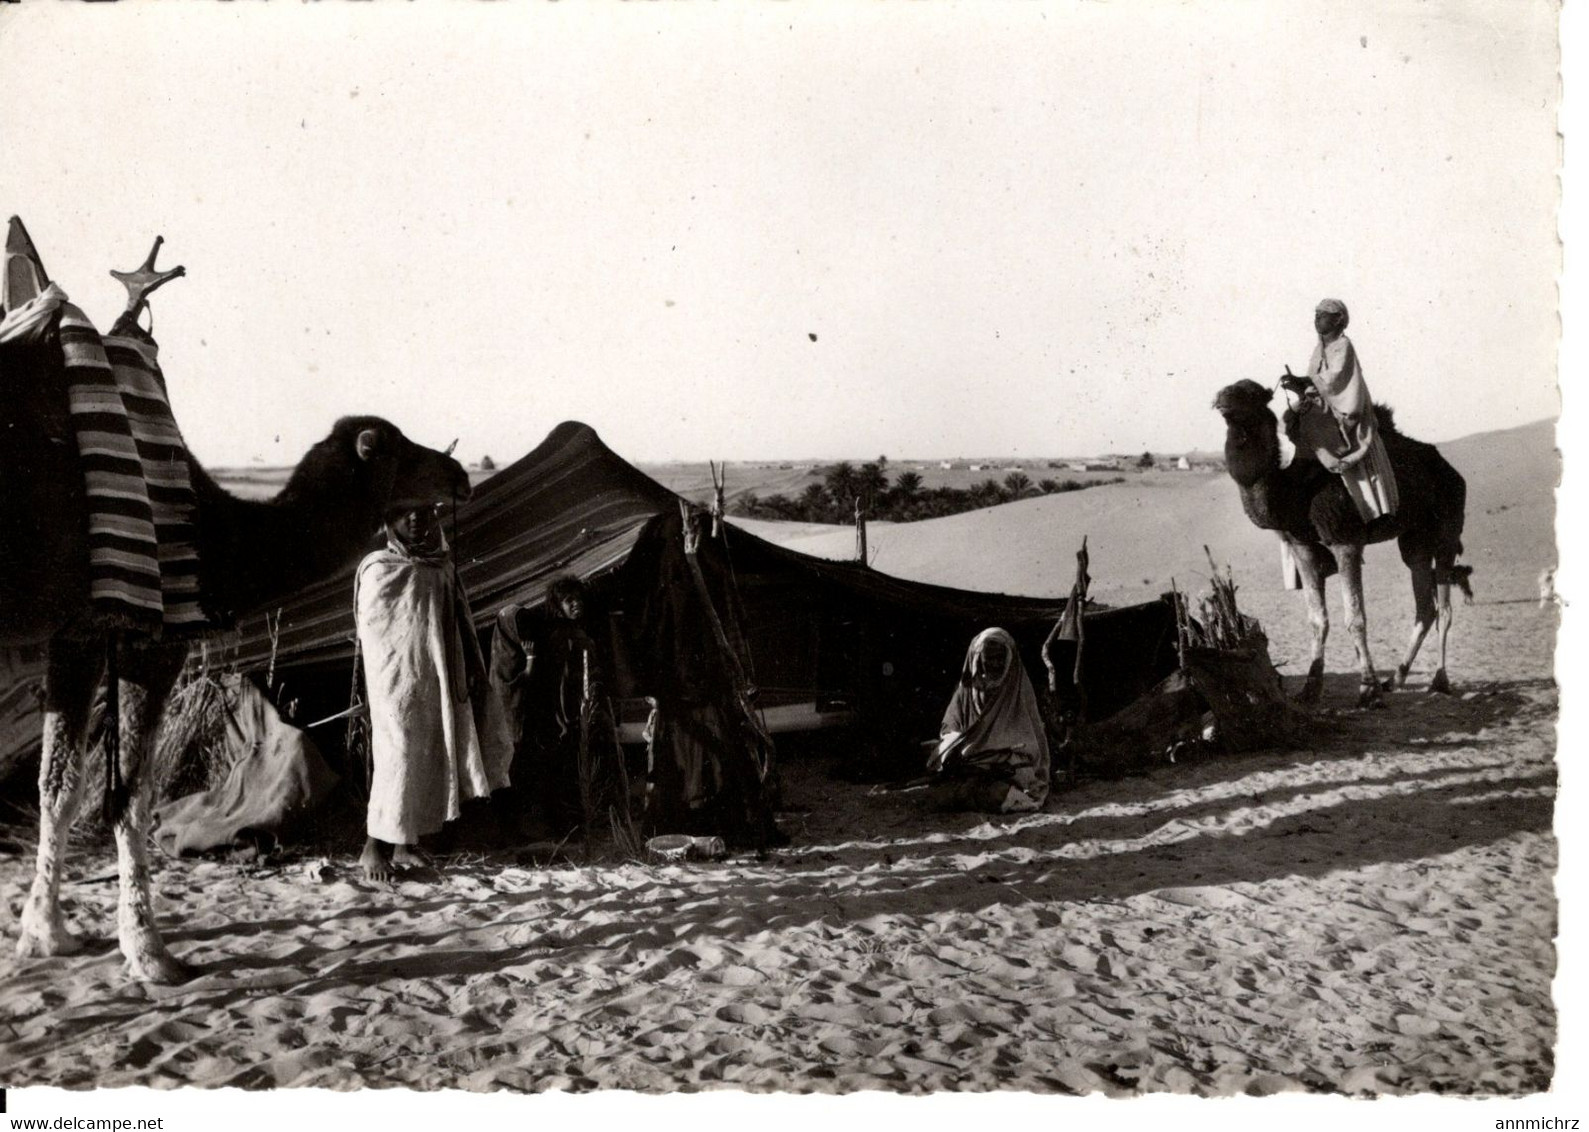 COLLECTION SAHARIENNE DEVANT LA HAIMOH OU TENTE NOMADE - Westsahara